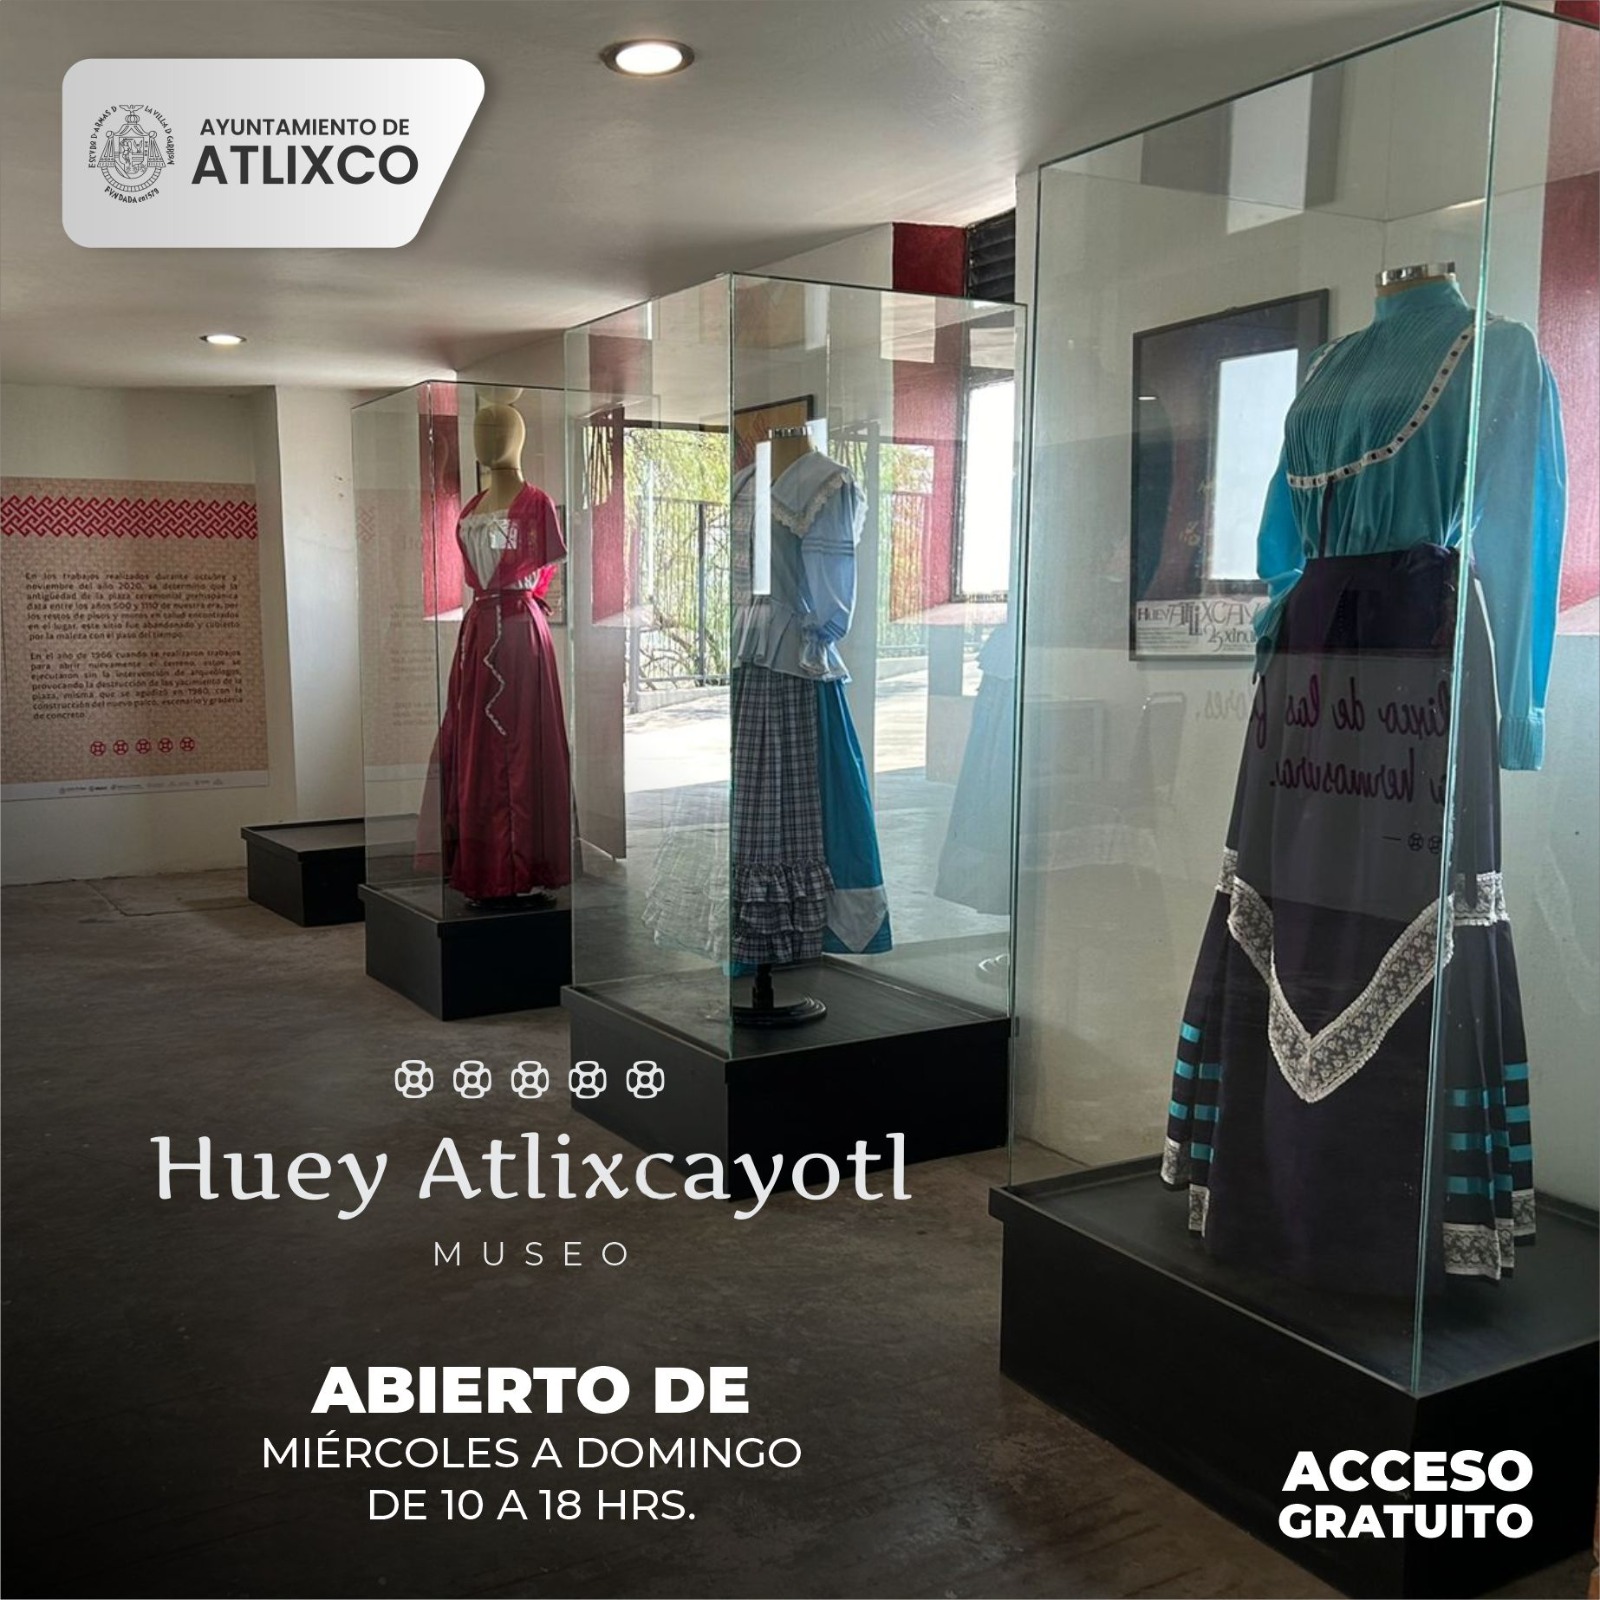 Visita el Museos del Huey Atlixcayotl y conoce la historia de este gran festival del pueblo mágico de Atlixco